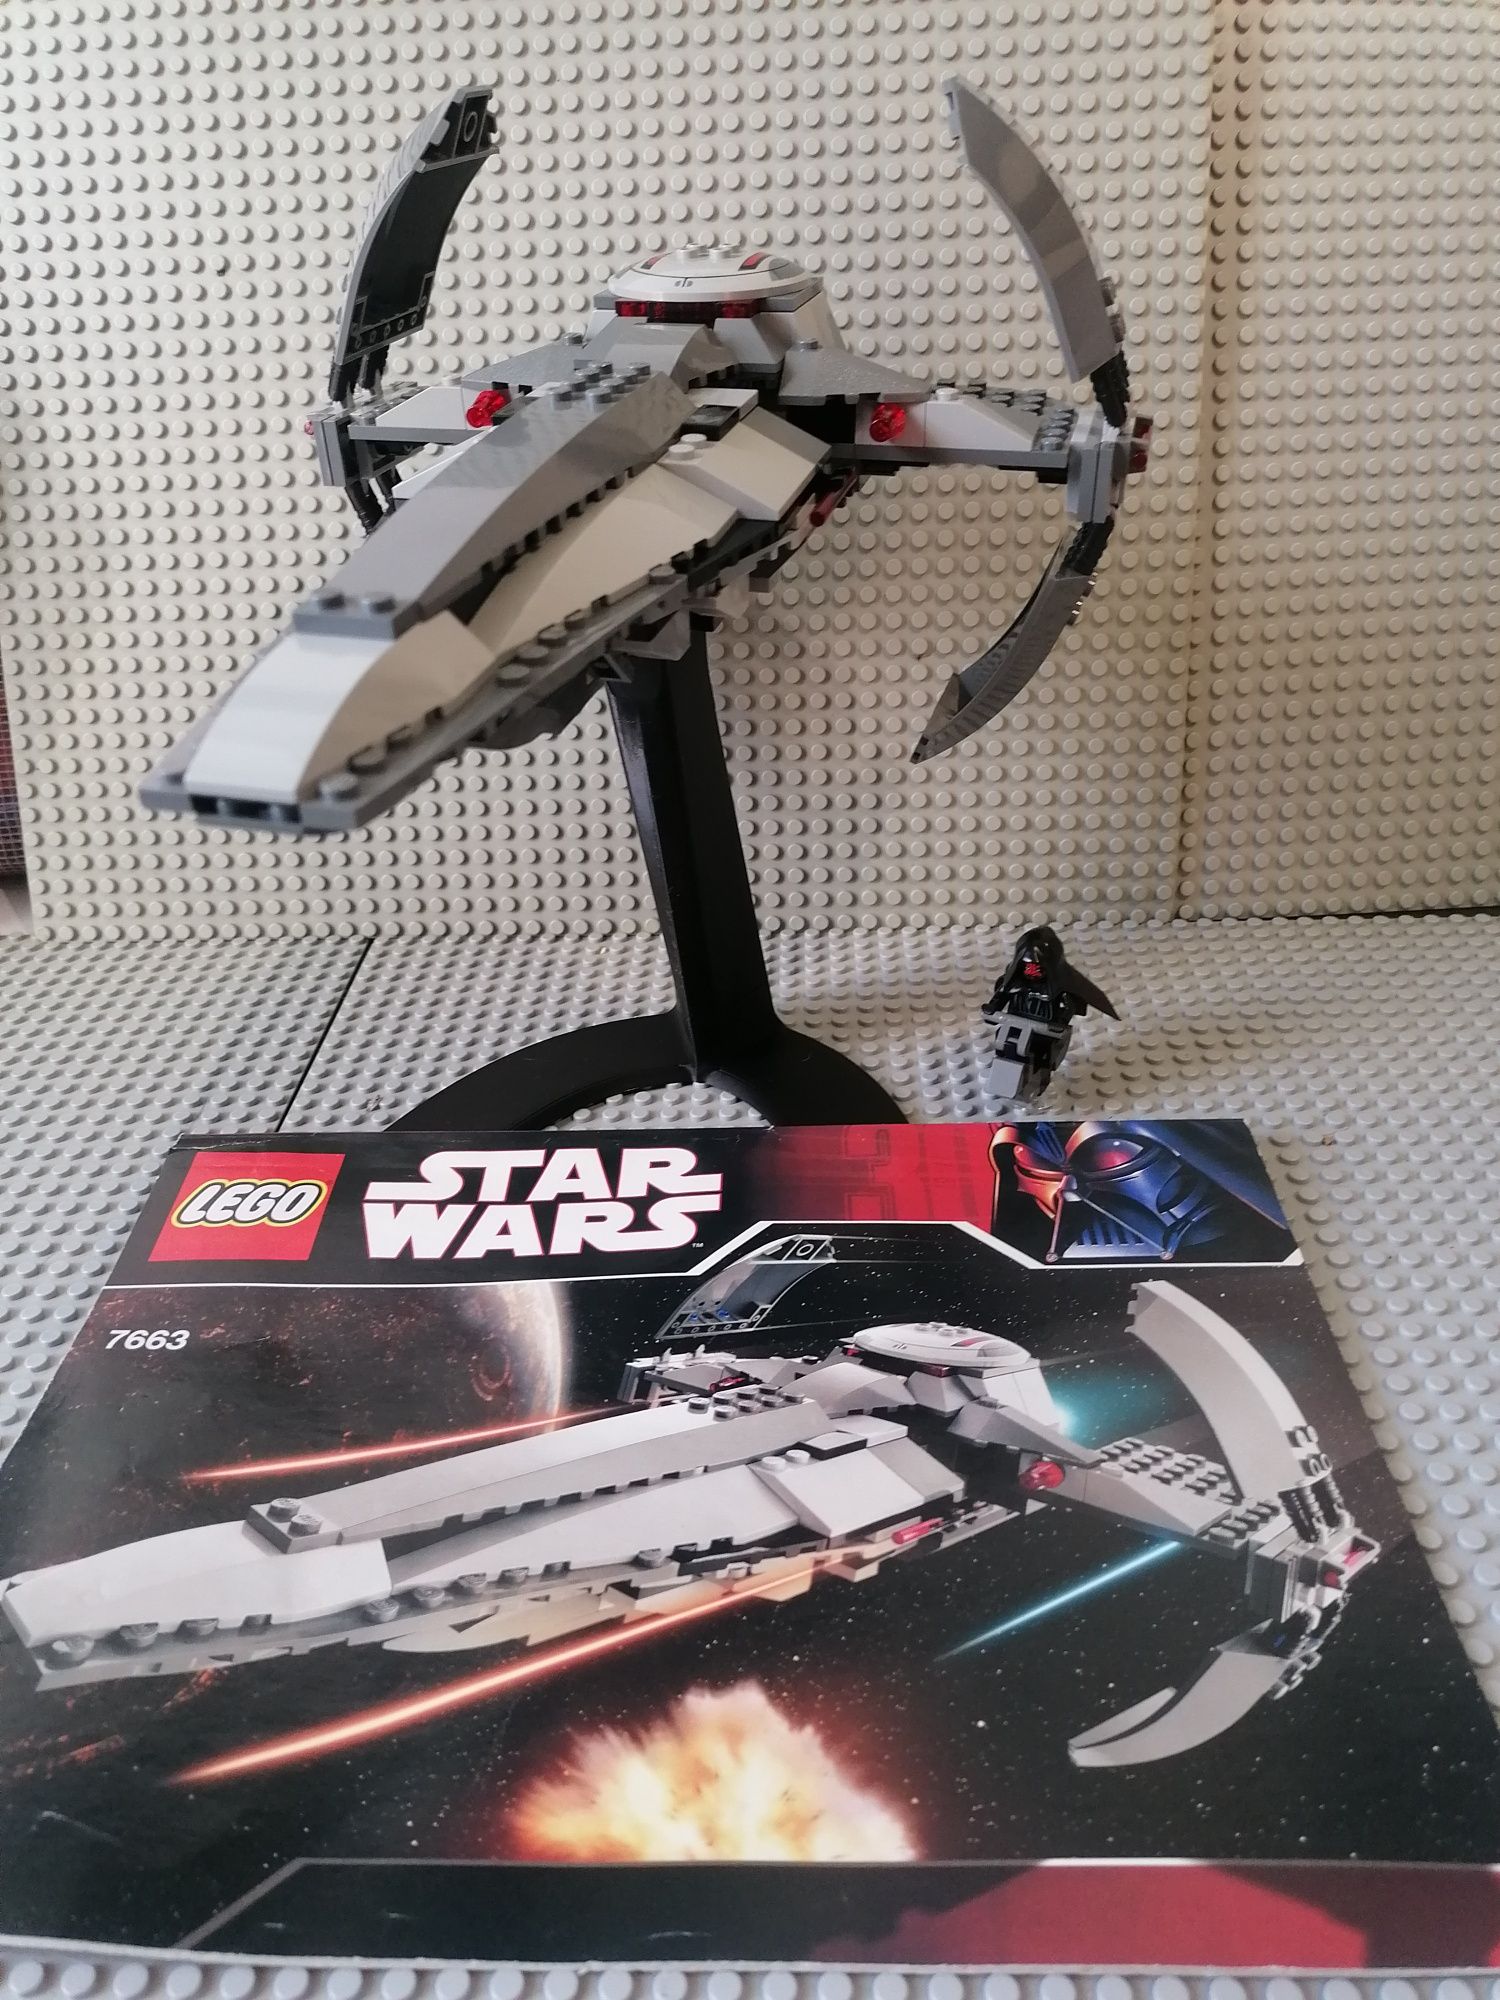 LEGO Star wars 7663